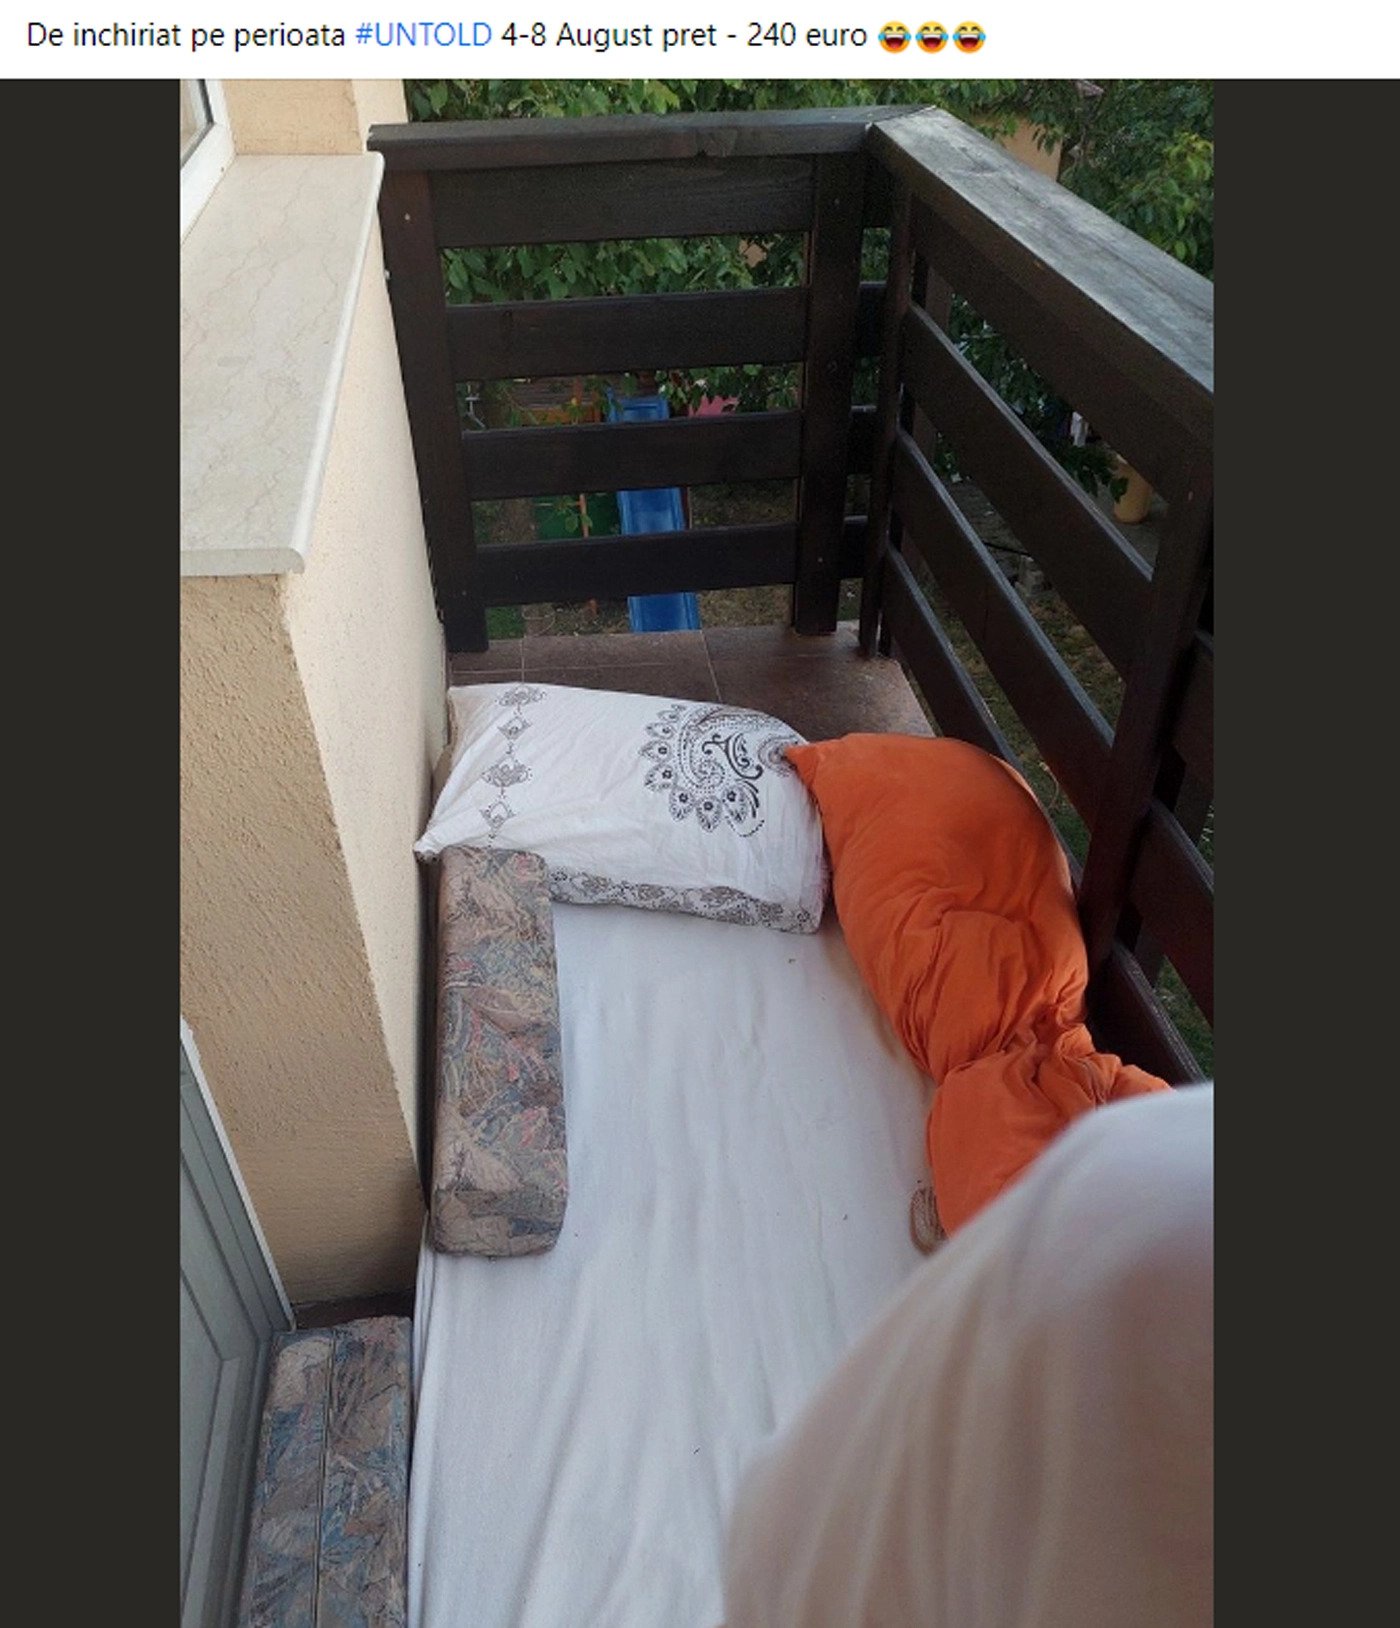 Cluj. 240 de euro. Un tânăr și-a închiria balconul pentru Untold 1